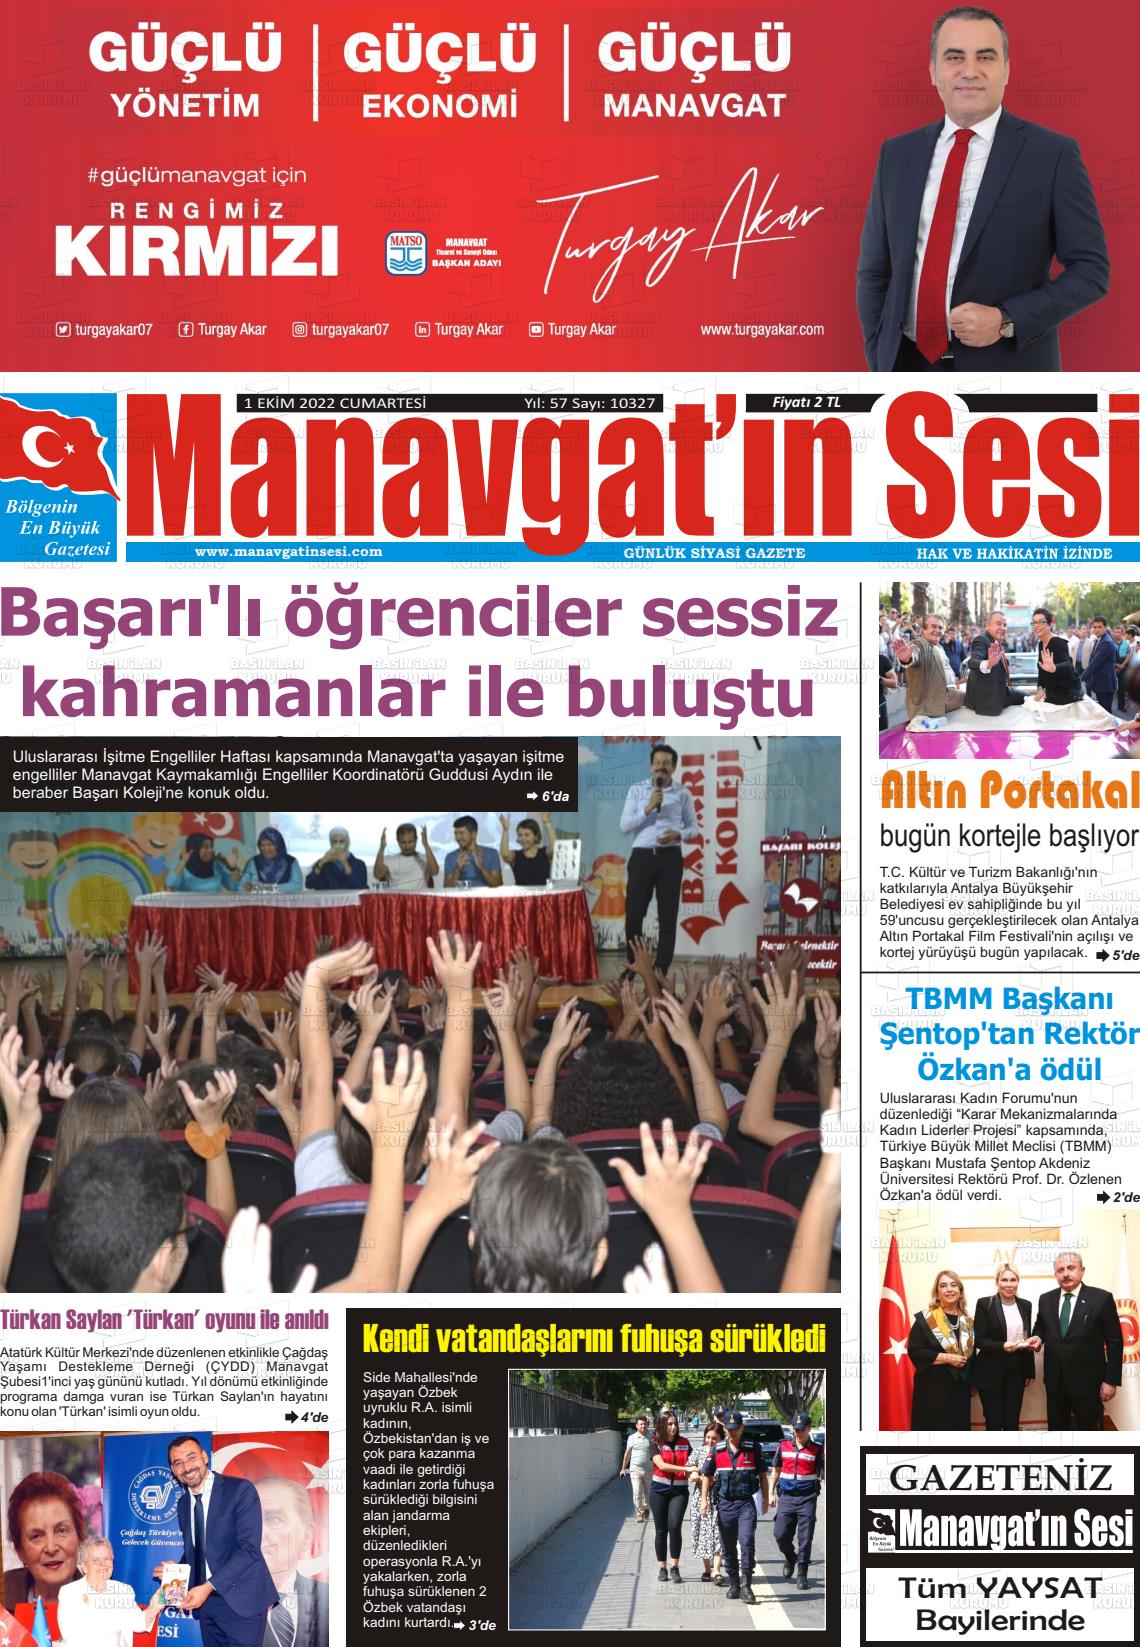 01 Ekim 2022 Manavgat'ın Sesi Gazete Manşeti